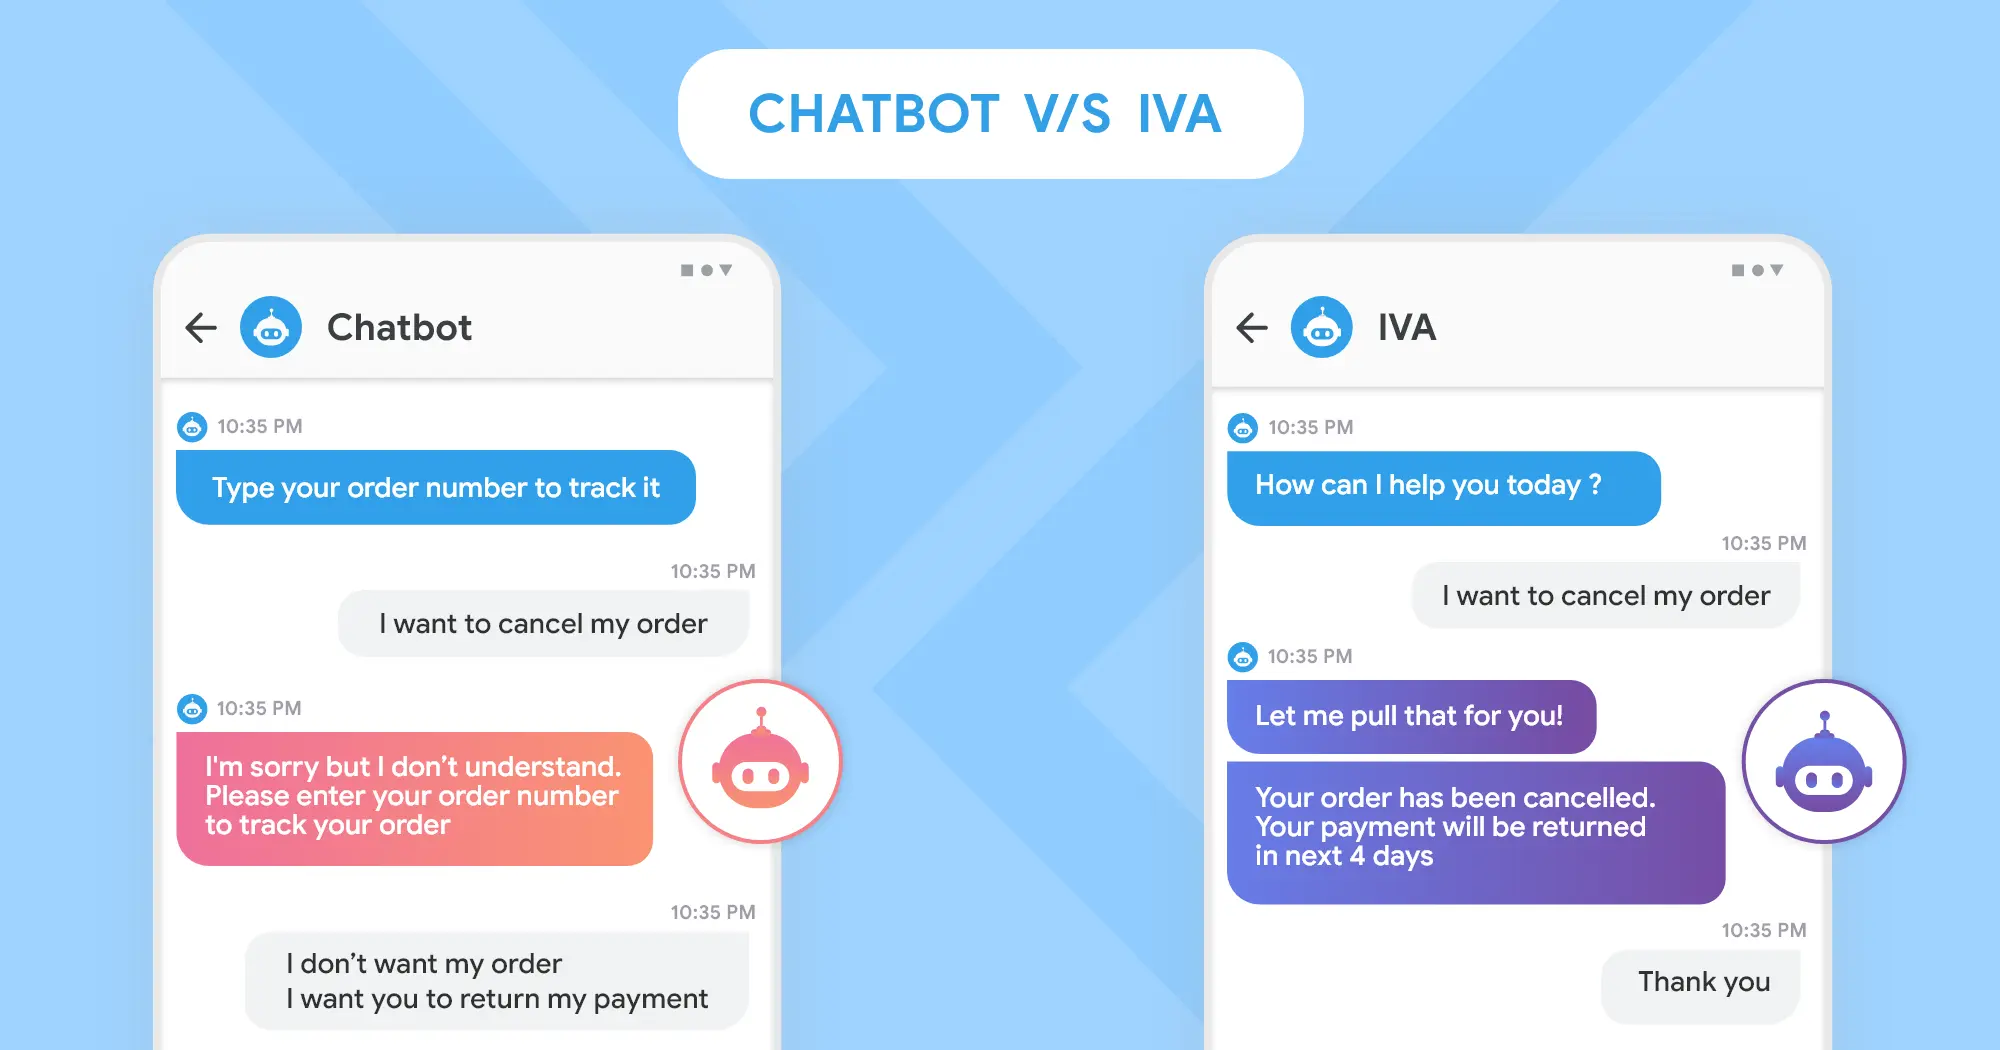 CHATBOT V/S IVA